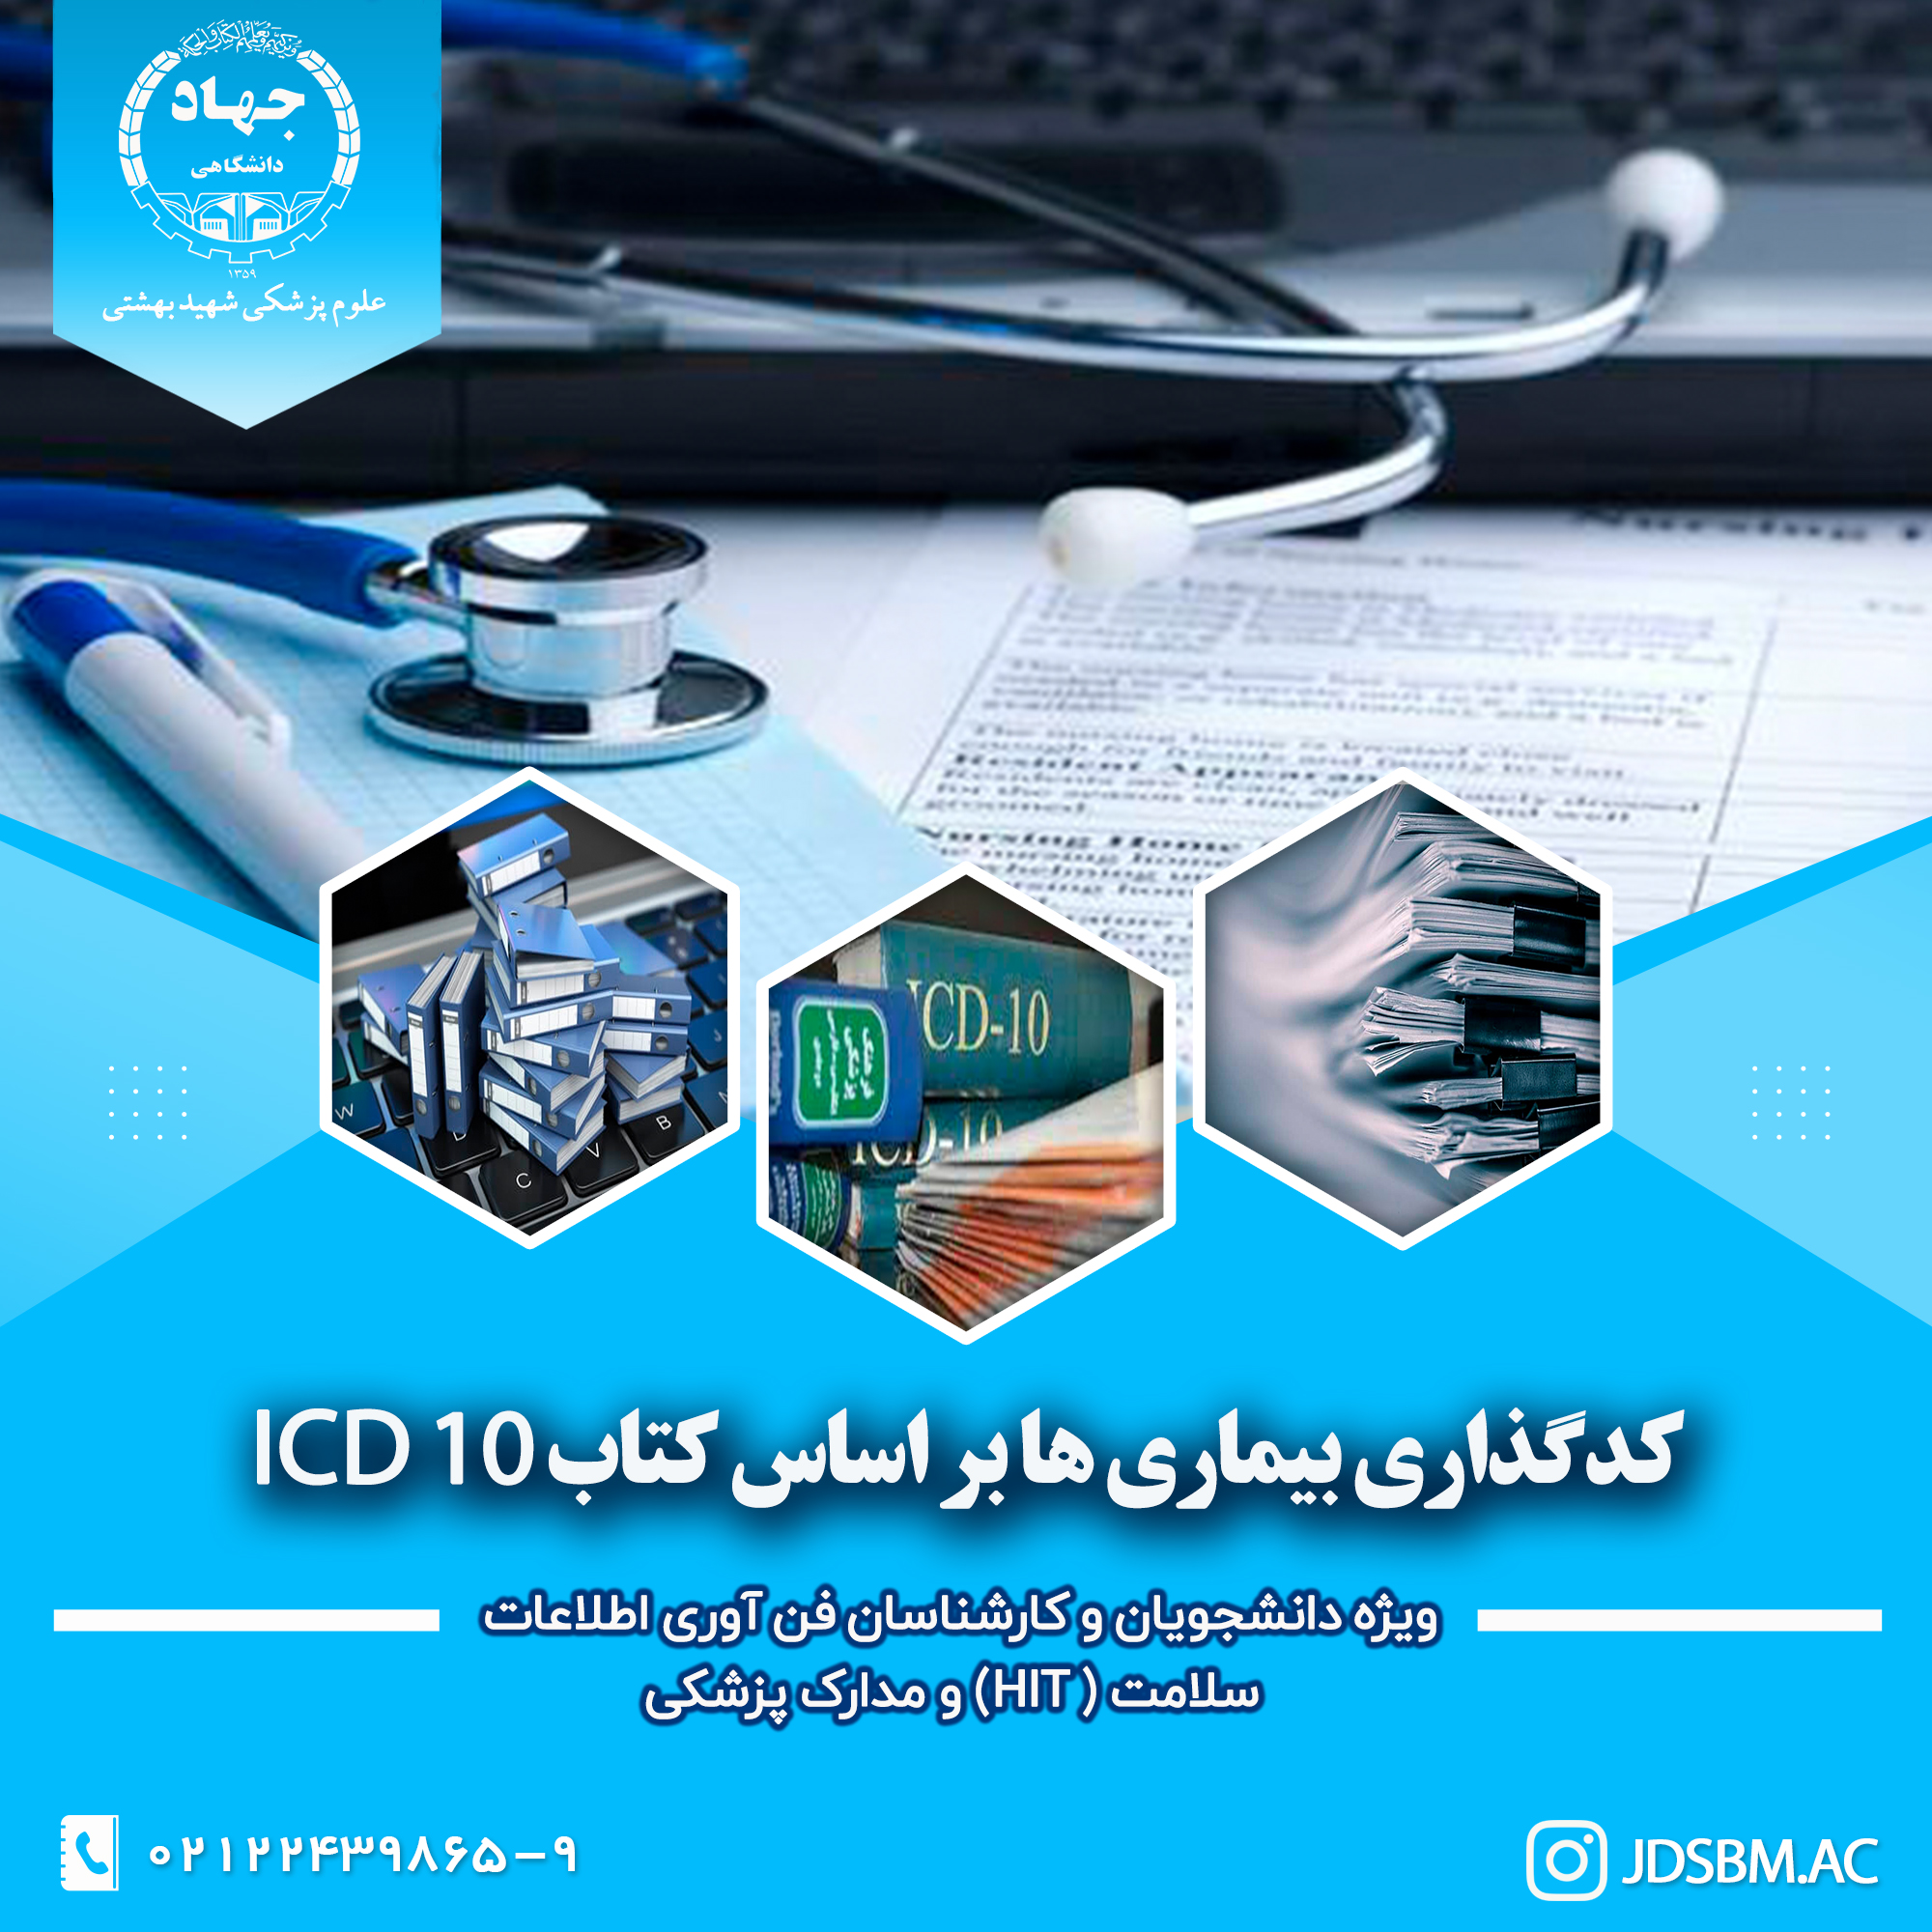 کدگذاری بیماریها بر اساس کتاب ICD10